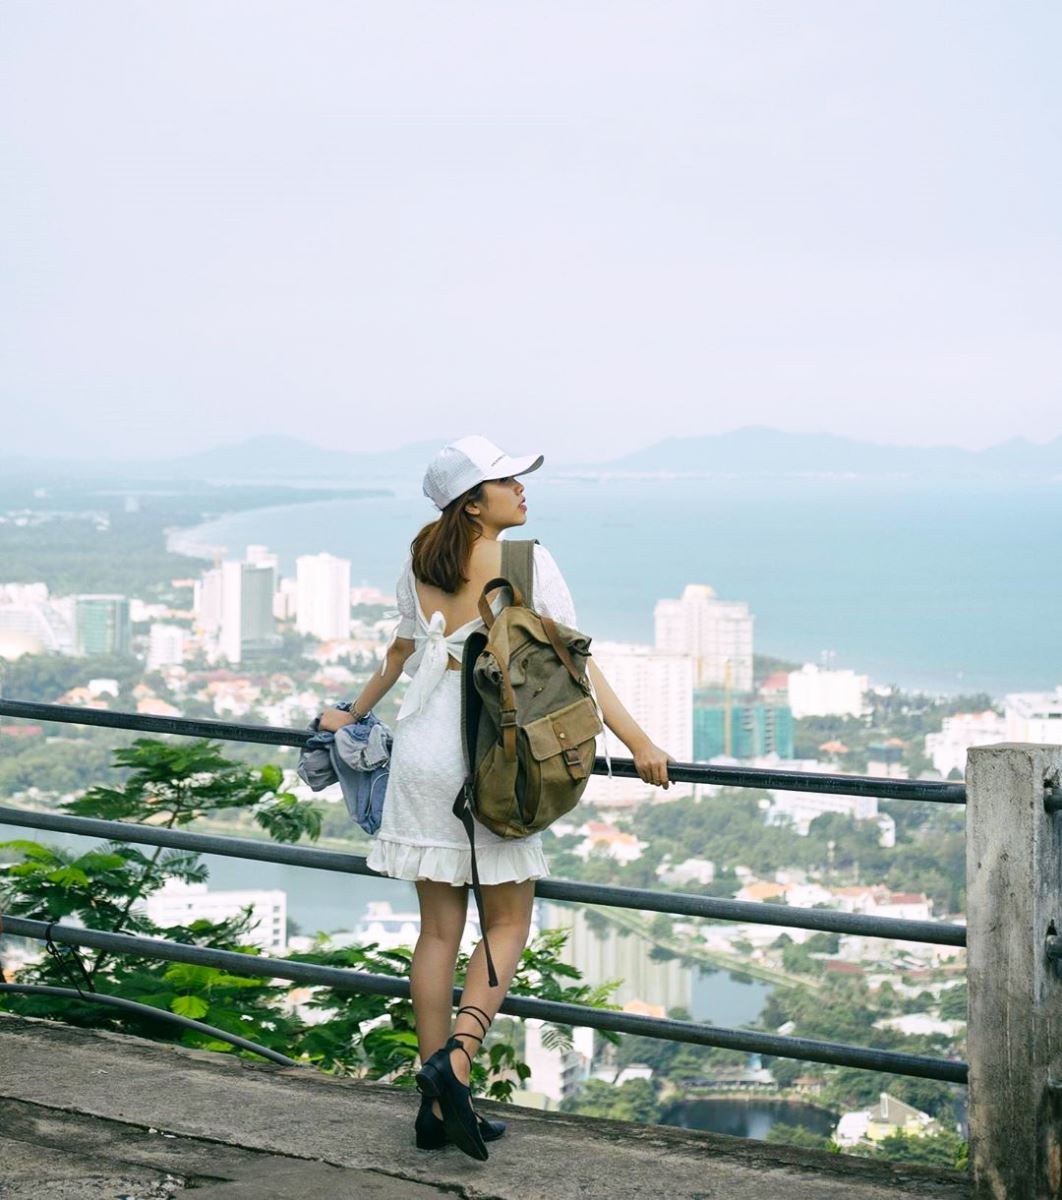 Ngắm nhìn cảnh thành phố, cảnh biển Vũng Tàu từ chân ngọn hải đăng 